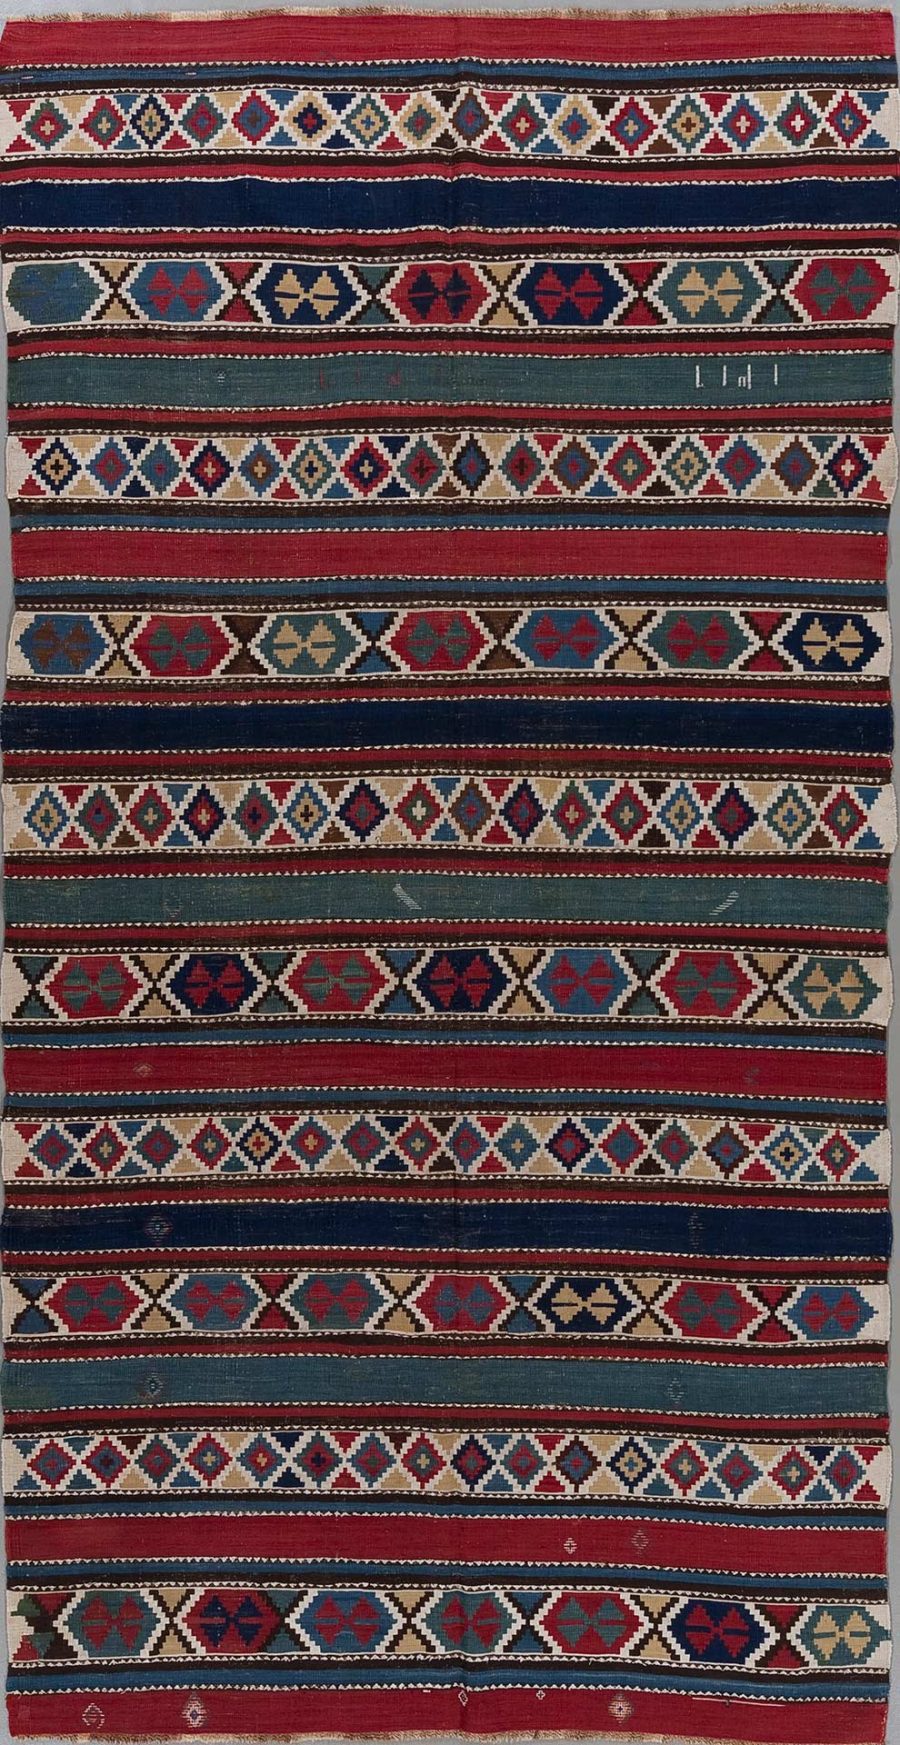 Traditioneller handgewebter Teppich mit mehrfarbigen, geometrischen Mustern und Streifen in Rot, Blau, Beige und anderen Farben.